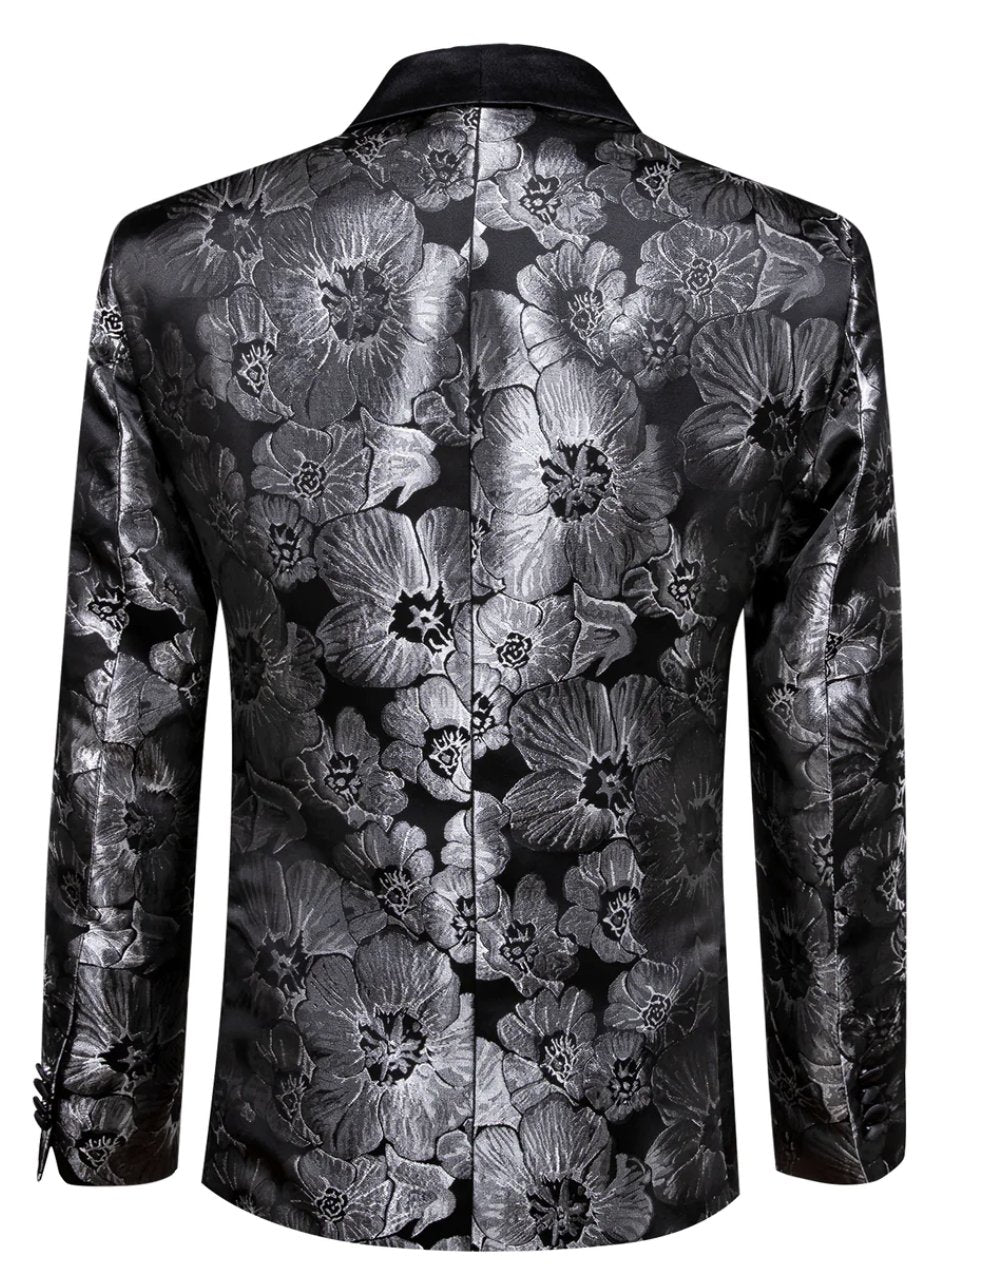 Men's Dress Party Black Floral Suit Jacket Slim One Button Stylish Blazer - XX - 0040 - SimonVon Shop